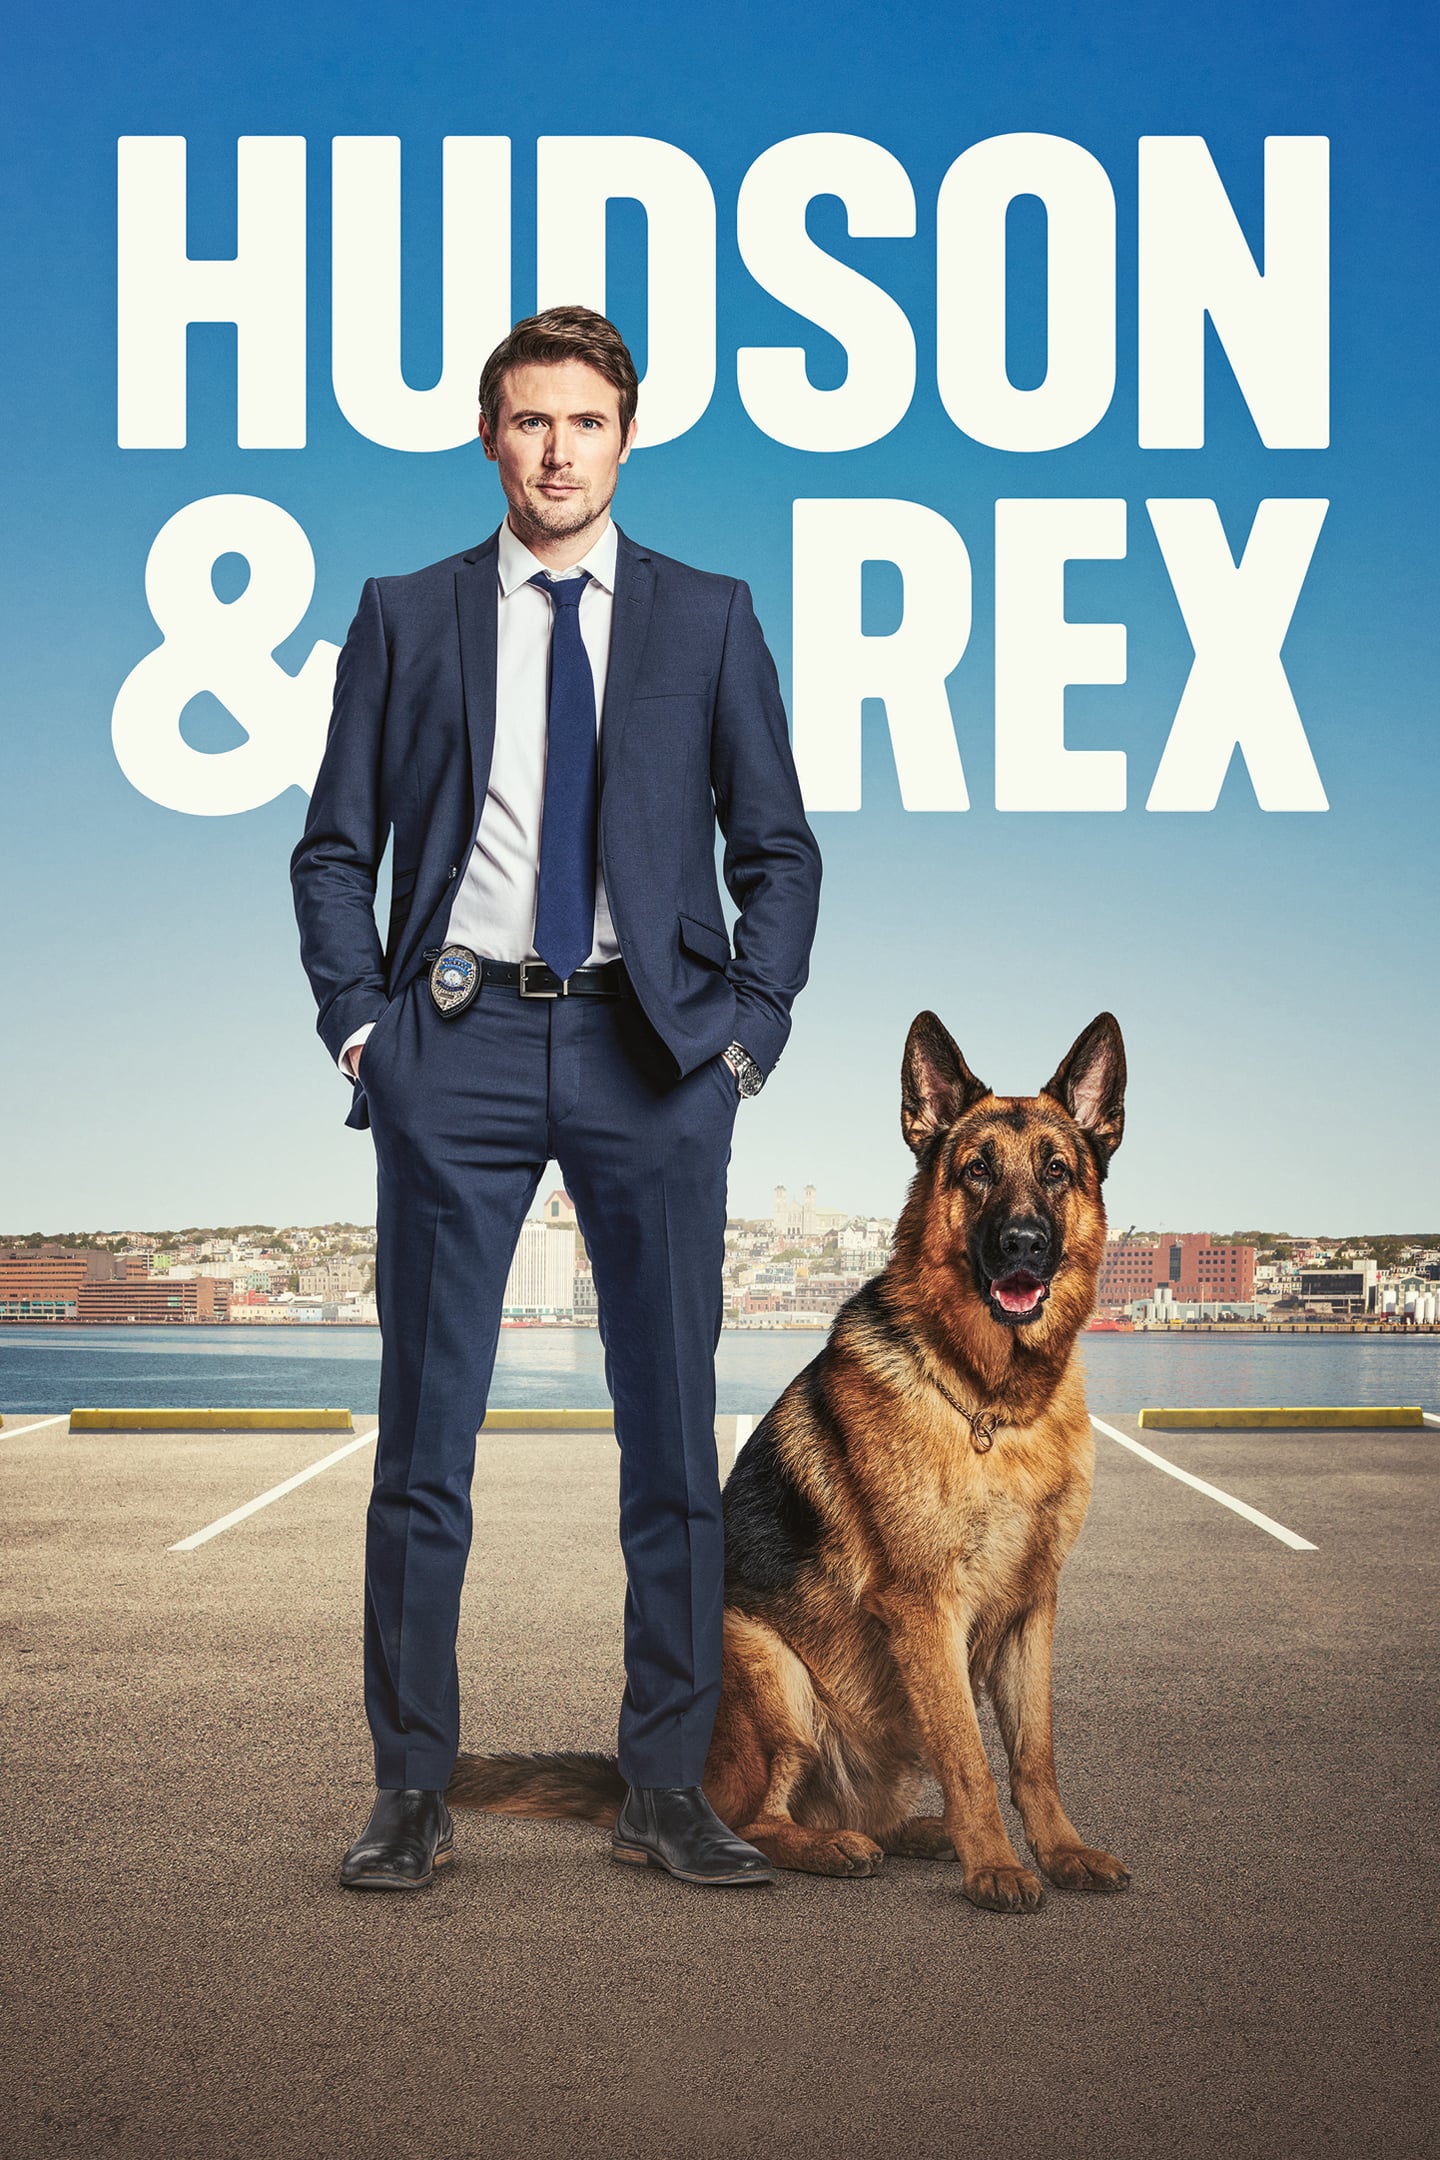 Hudson et Rex Série TV 2019 AlloCiné